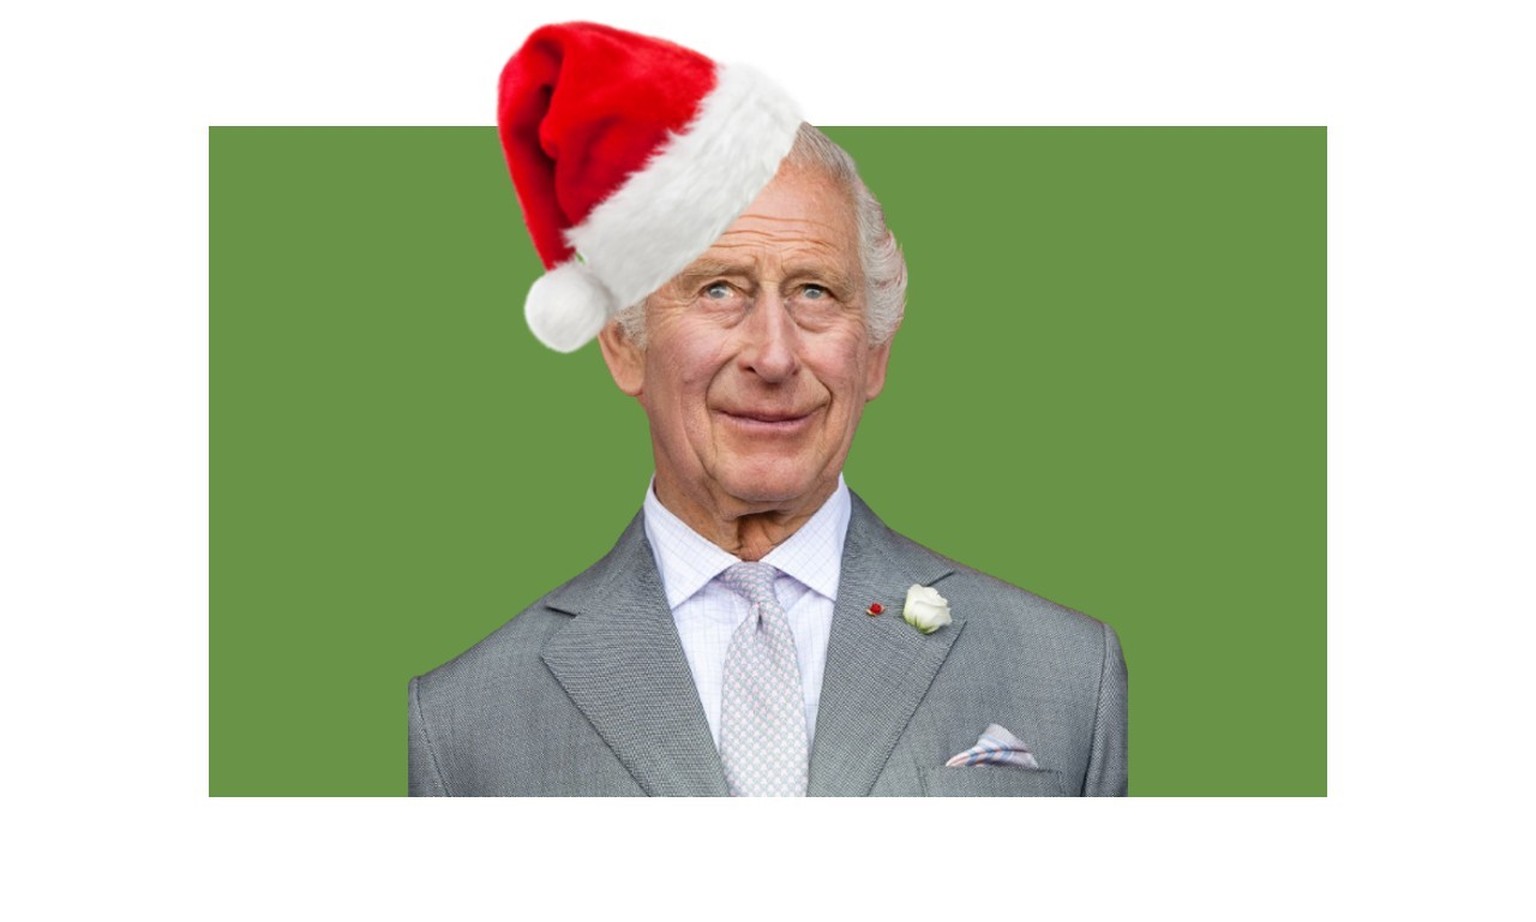 Charles et les autres membres senior de la famille royale se retrouvent en masse à Sandringham, où les Windsor célèbrent Noël depuis 1988. Voici le programme - et le menu très traditionnel.